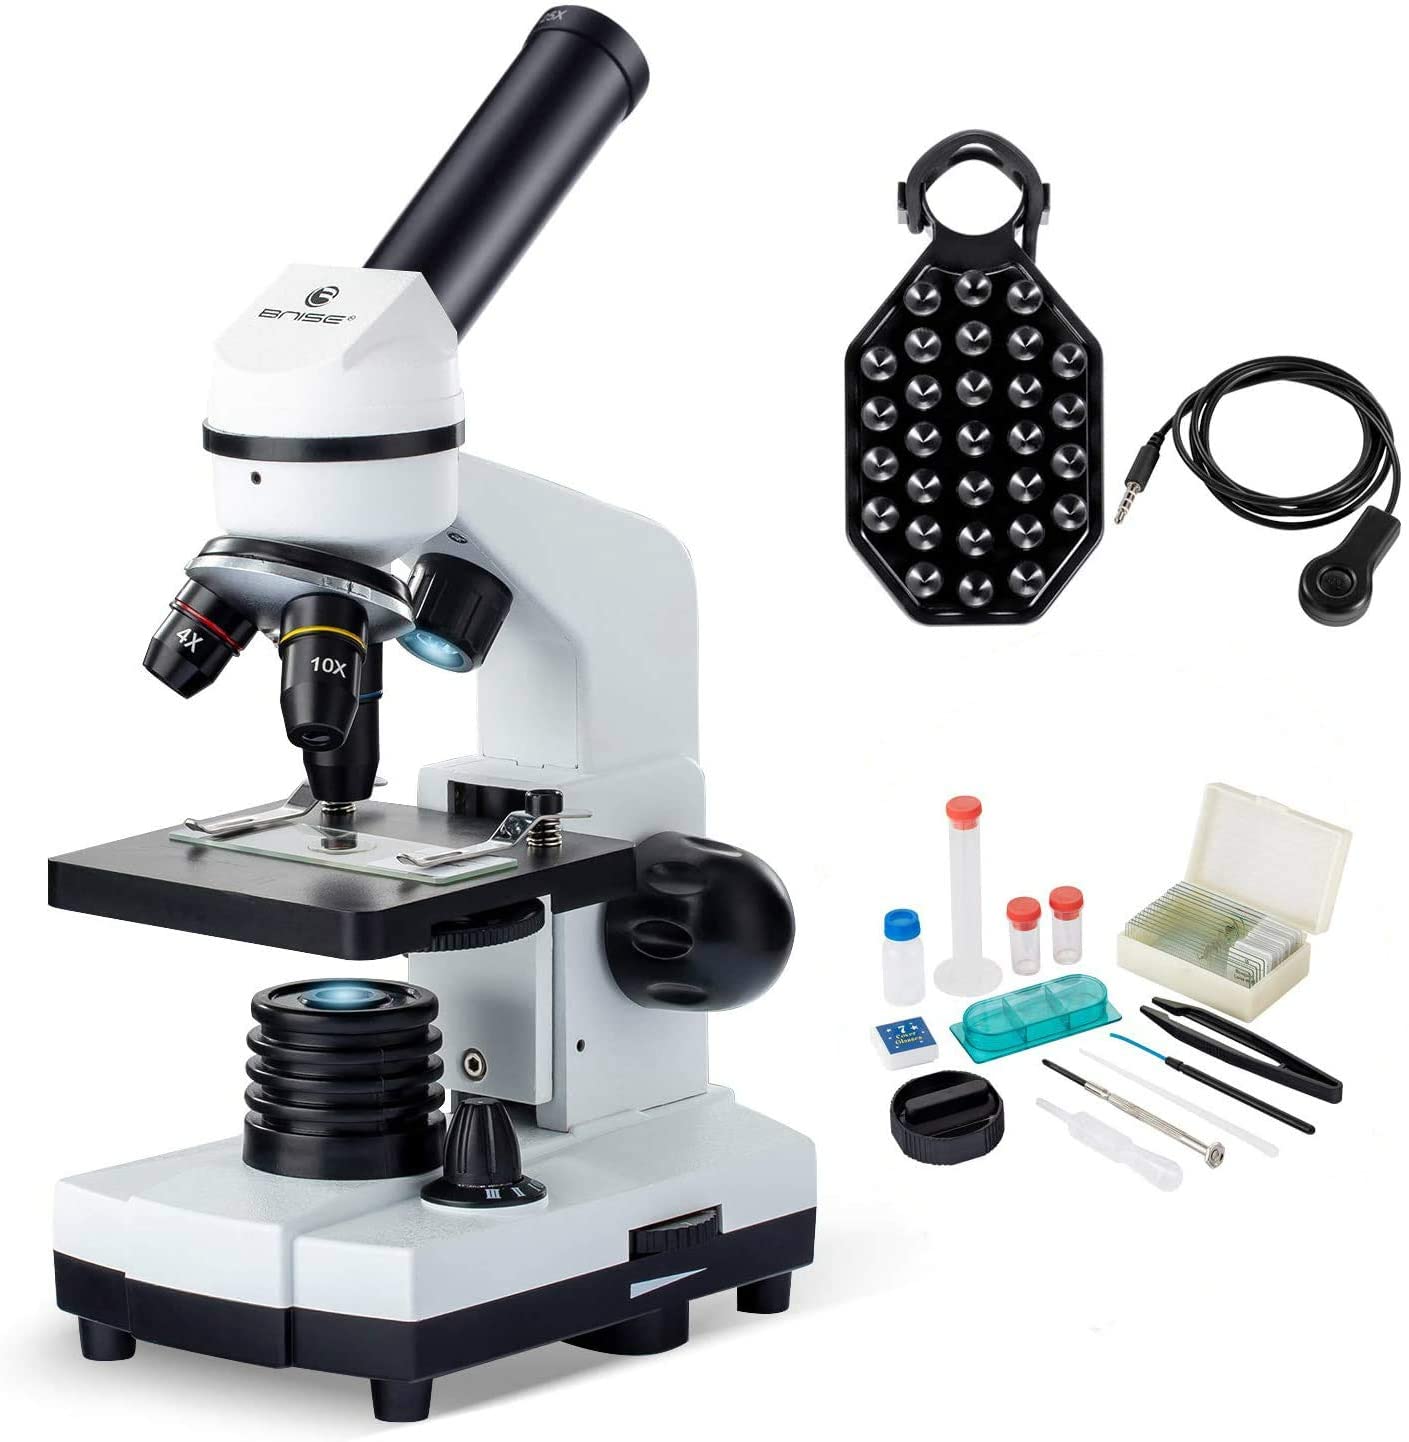 BNISE Microscopio para Niños Estudiantes 100X-1000X, Potente Microscopios  Biológico Optico Educativo con Adaptador teléfono, Muestras Biológicas,  operación Equipo - Industria, empresas y ciencia 